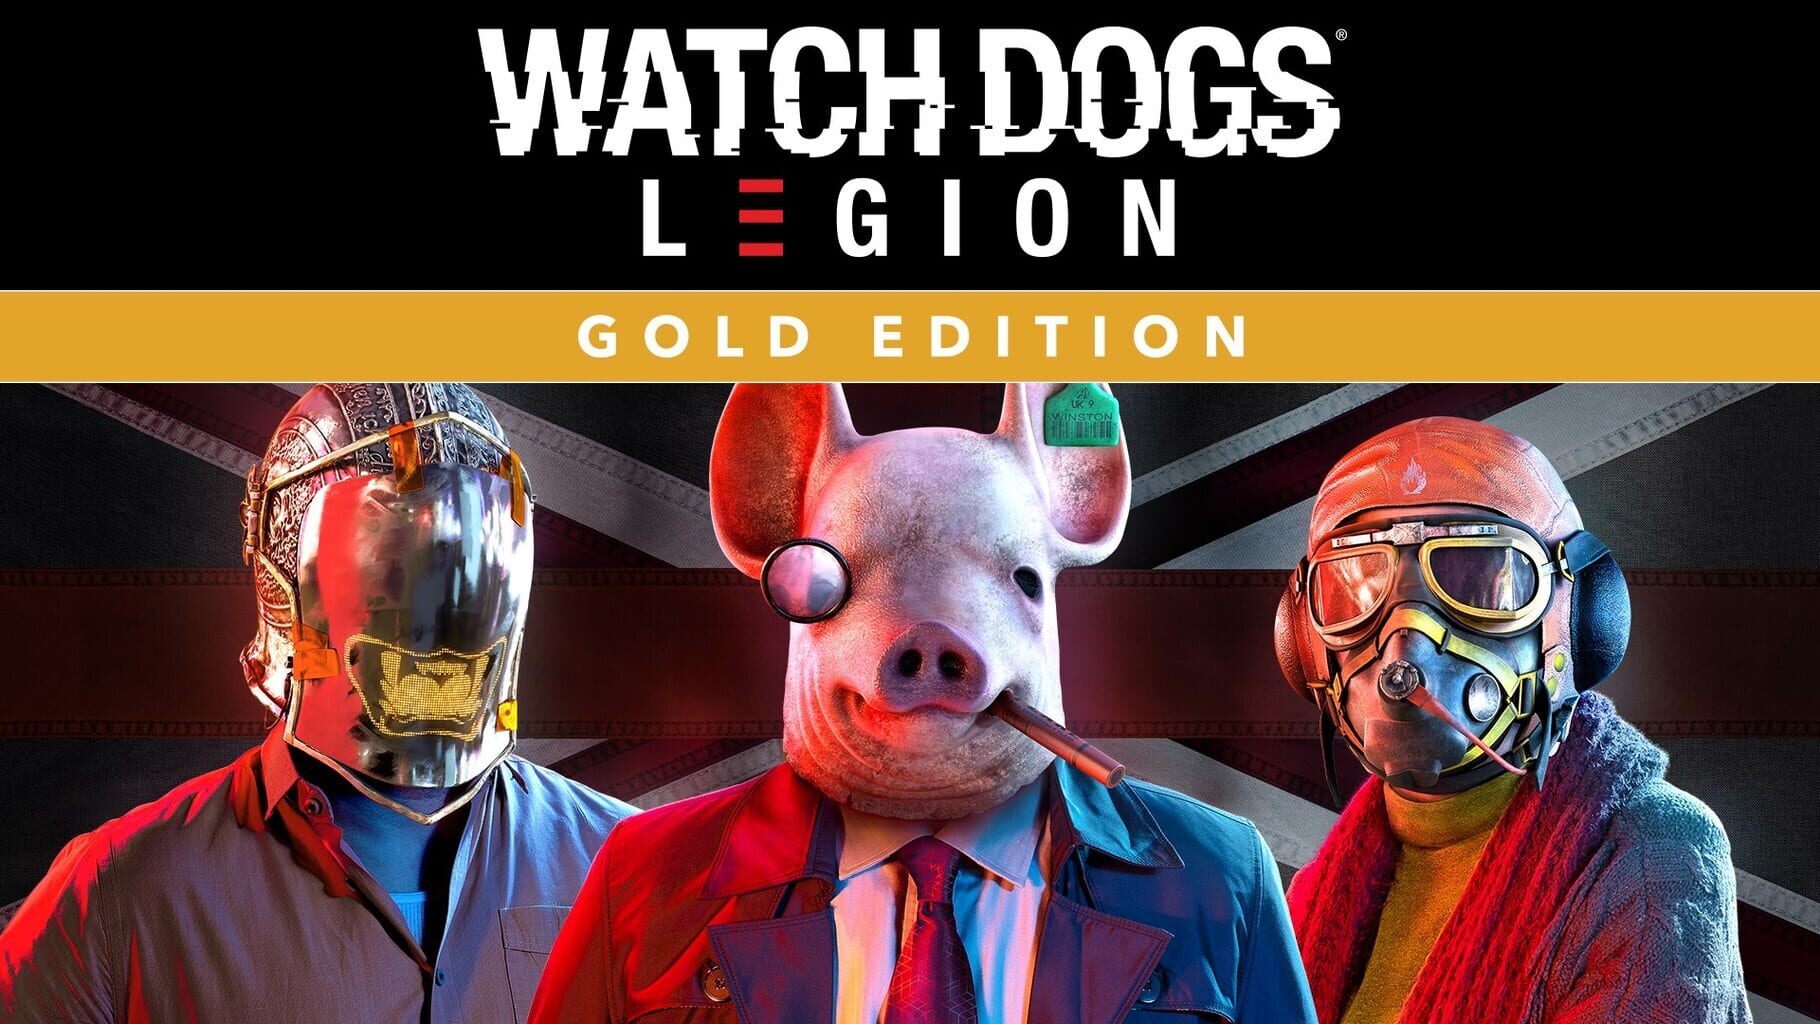 Arte - Watch Dogs: Legion - Gold Edition